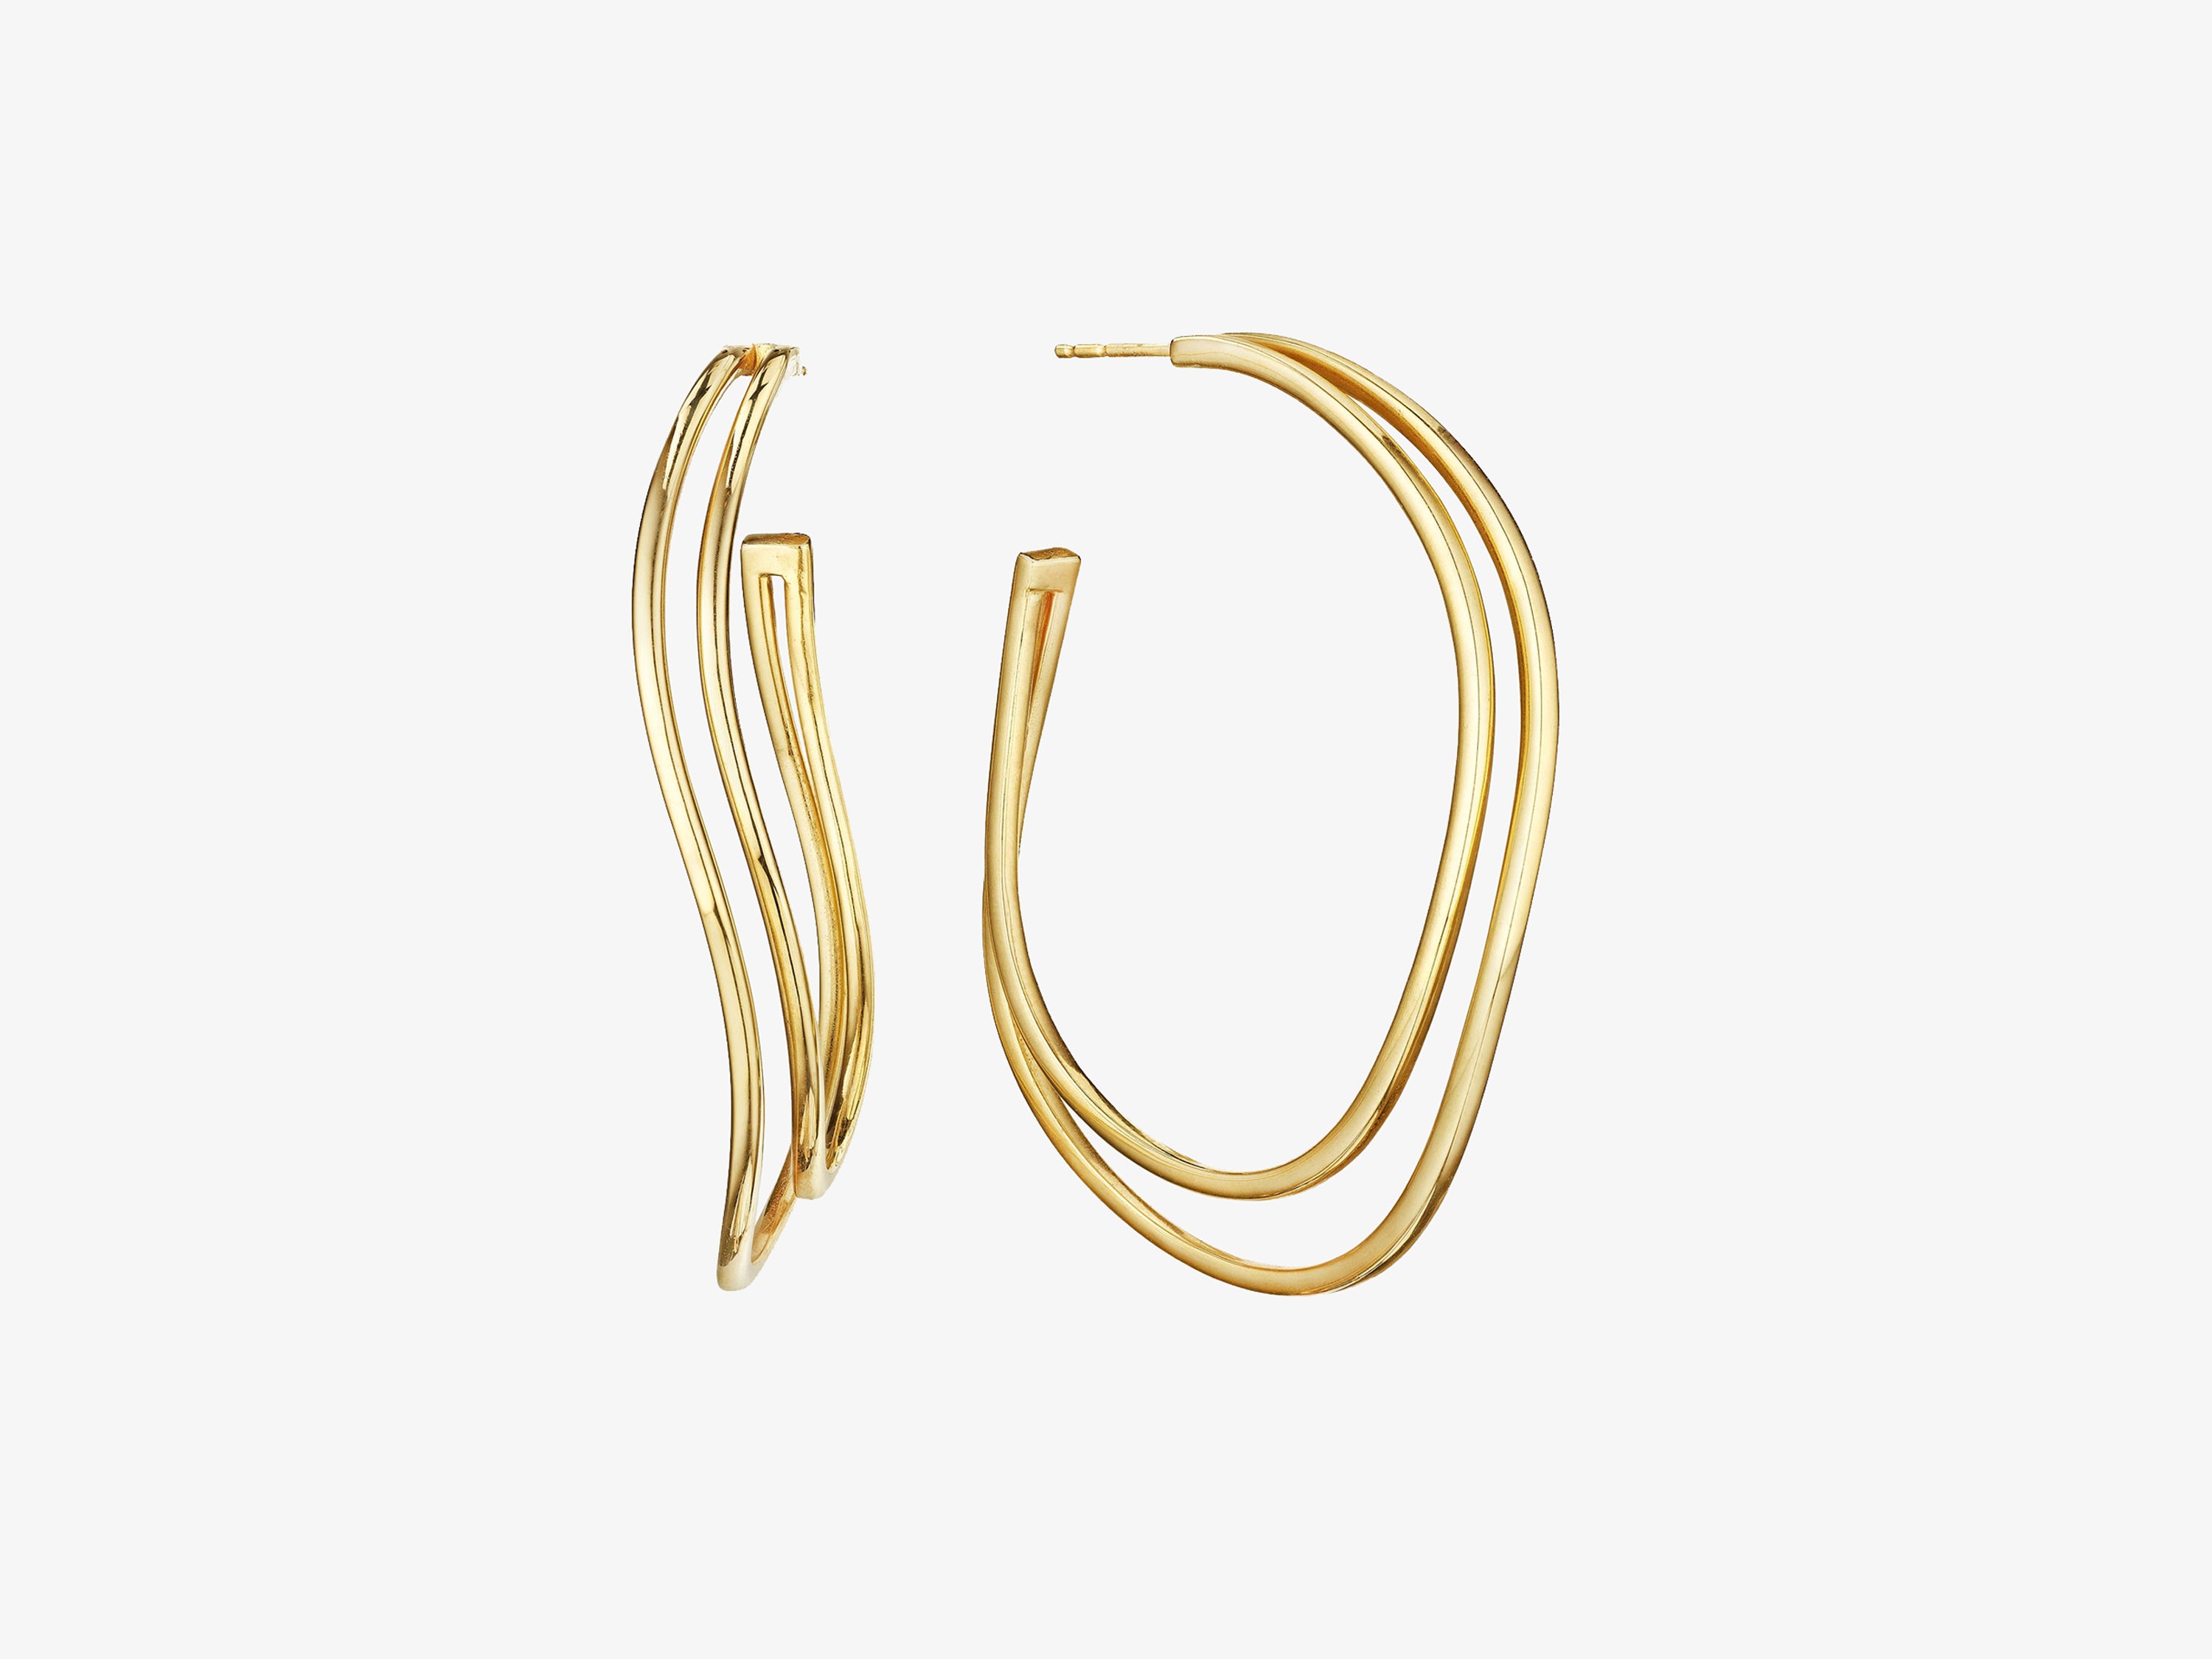 All Gold Two Row Hoop Earrings, 1 5/8”